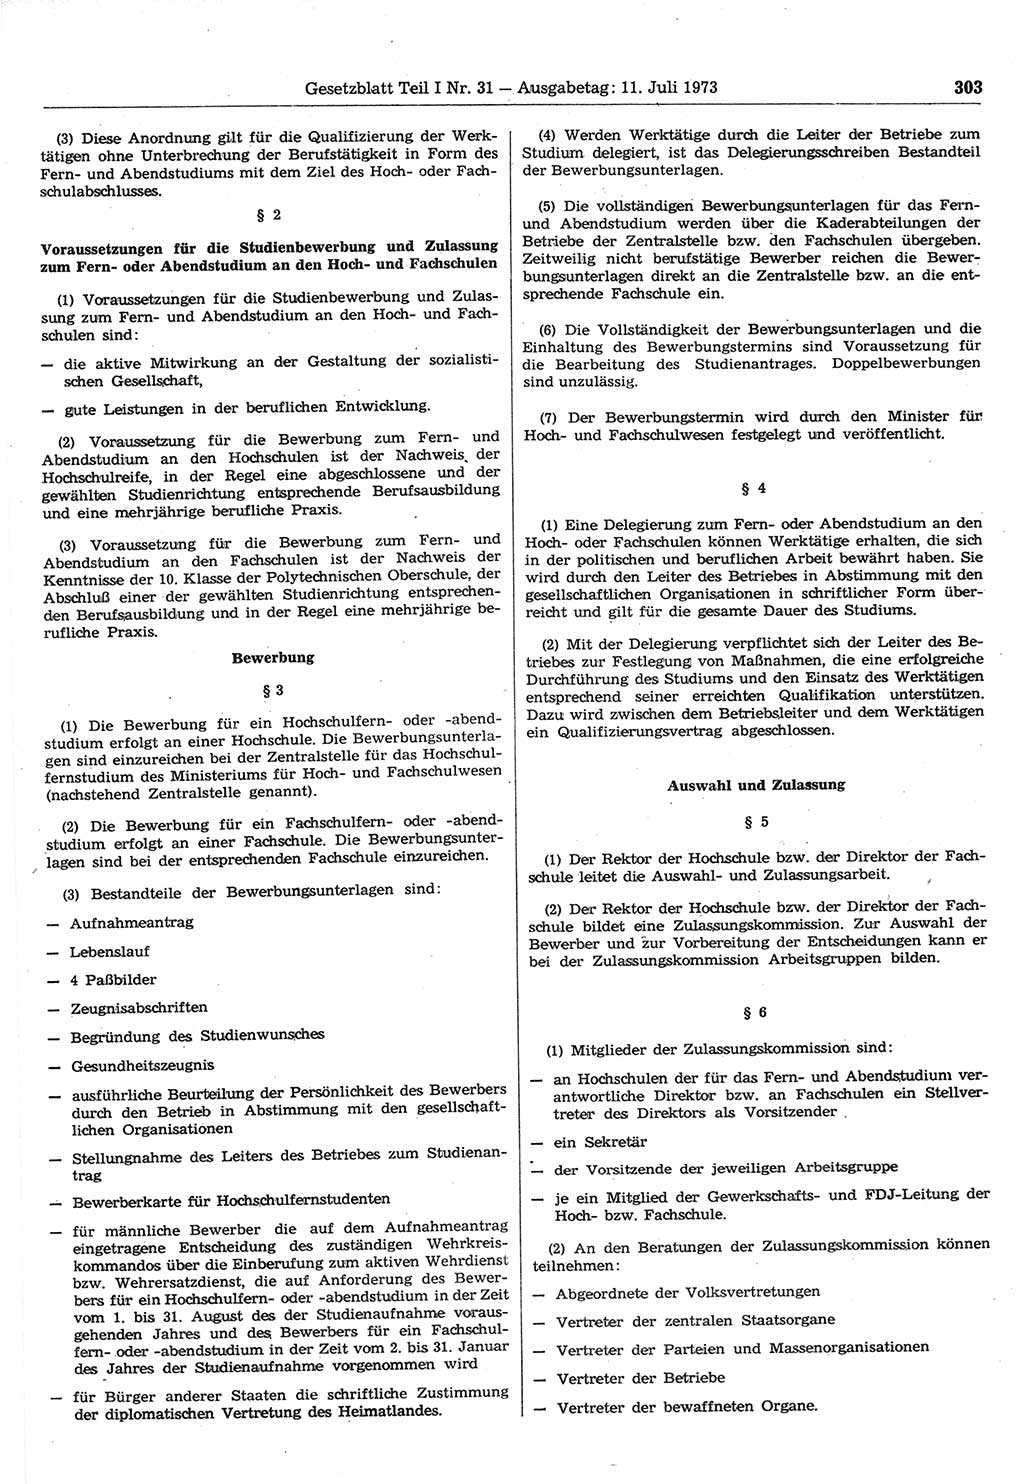 Gesetzblatt (GBl.) der Deutschen Demokratischen Republik (DDR) Teil Ⅰ 1973, Seite 303 (GBl. DDR Ⅰ 1973, S. 303)